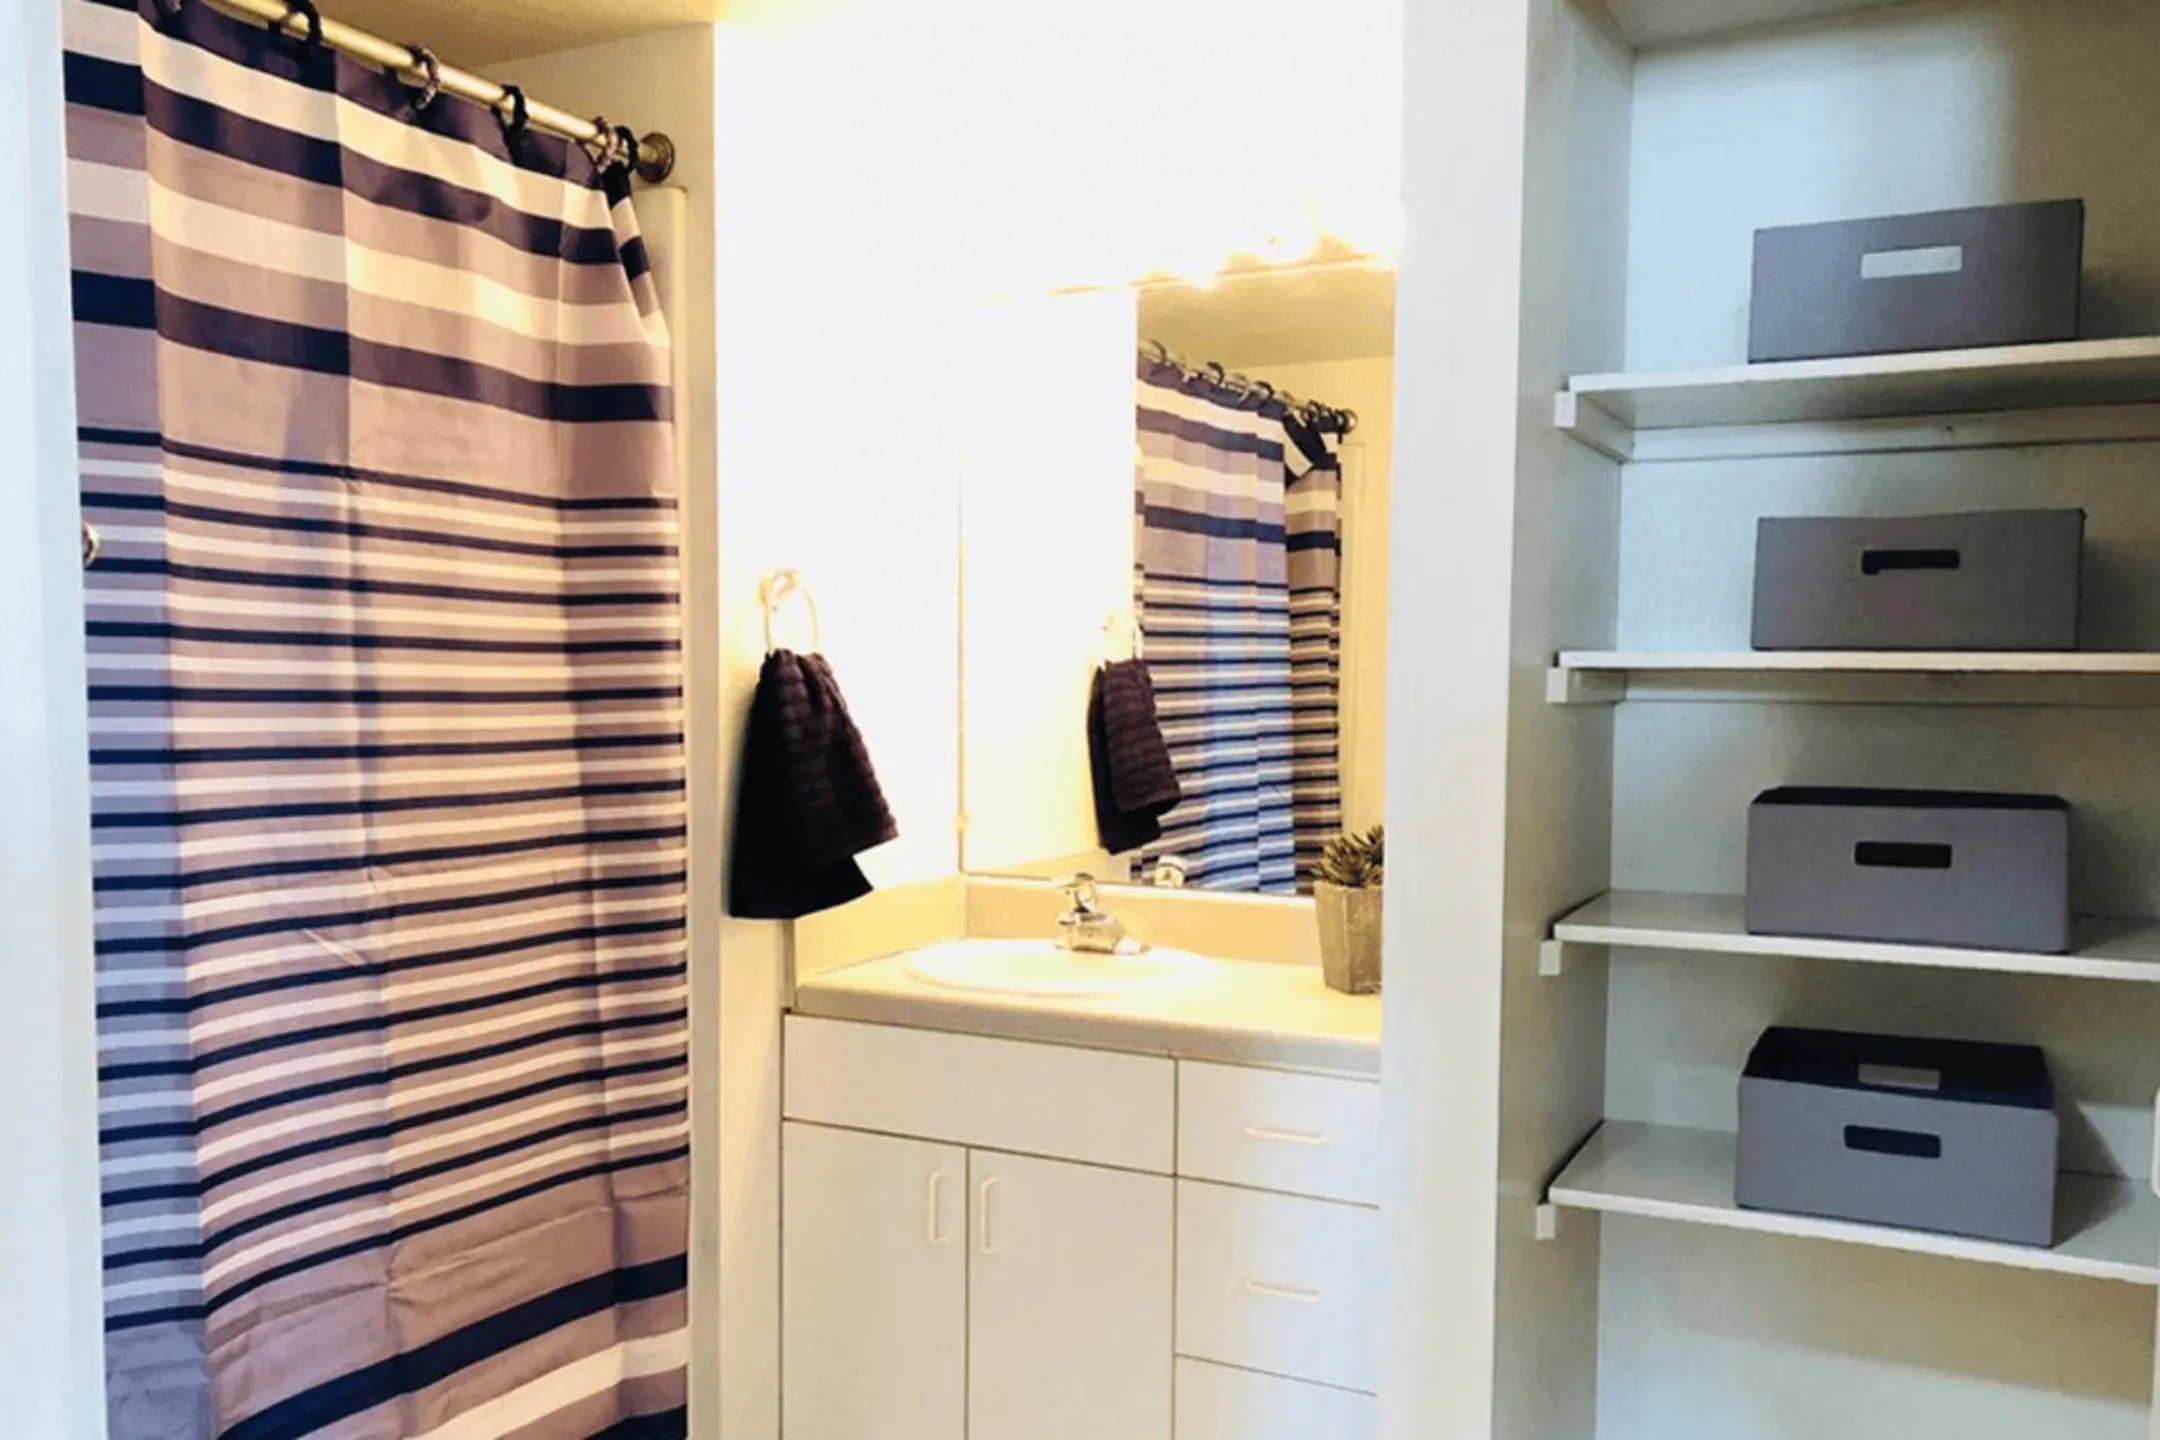 Bathroom - Le Claire Apartments - Moline, IL